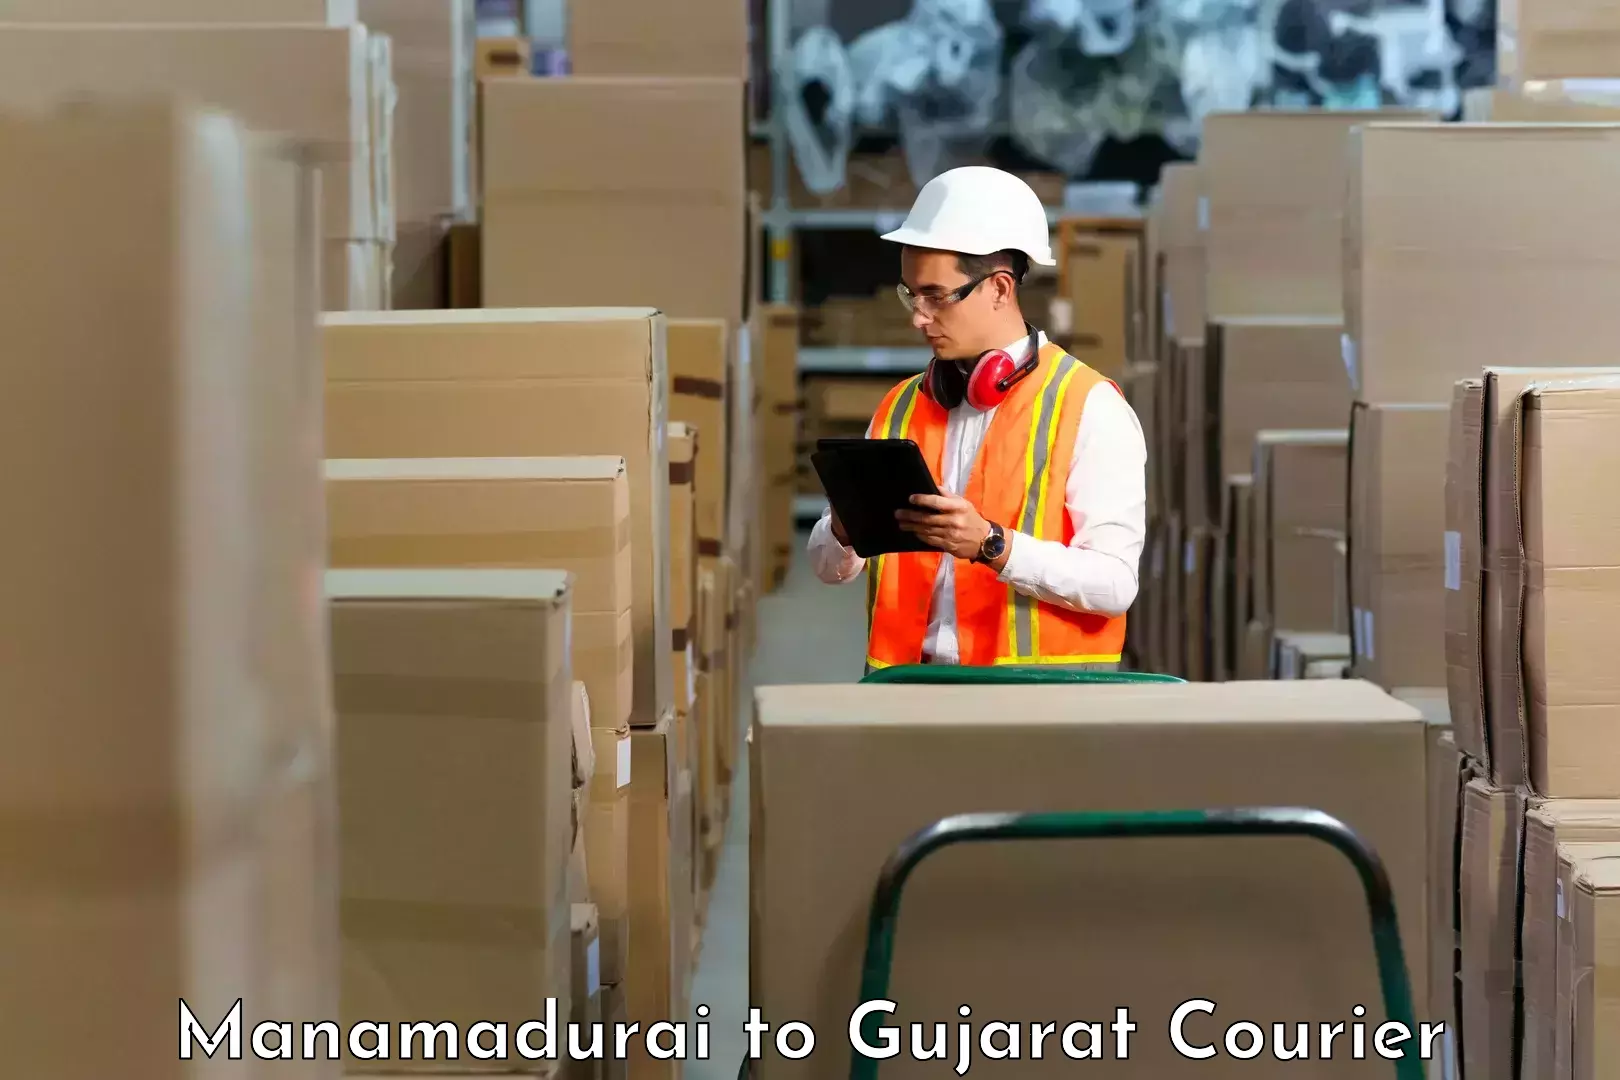 Premium courier solutions Manamadurai to Gujarat